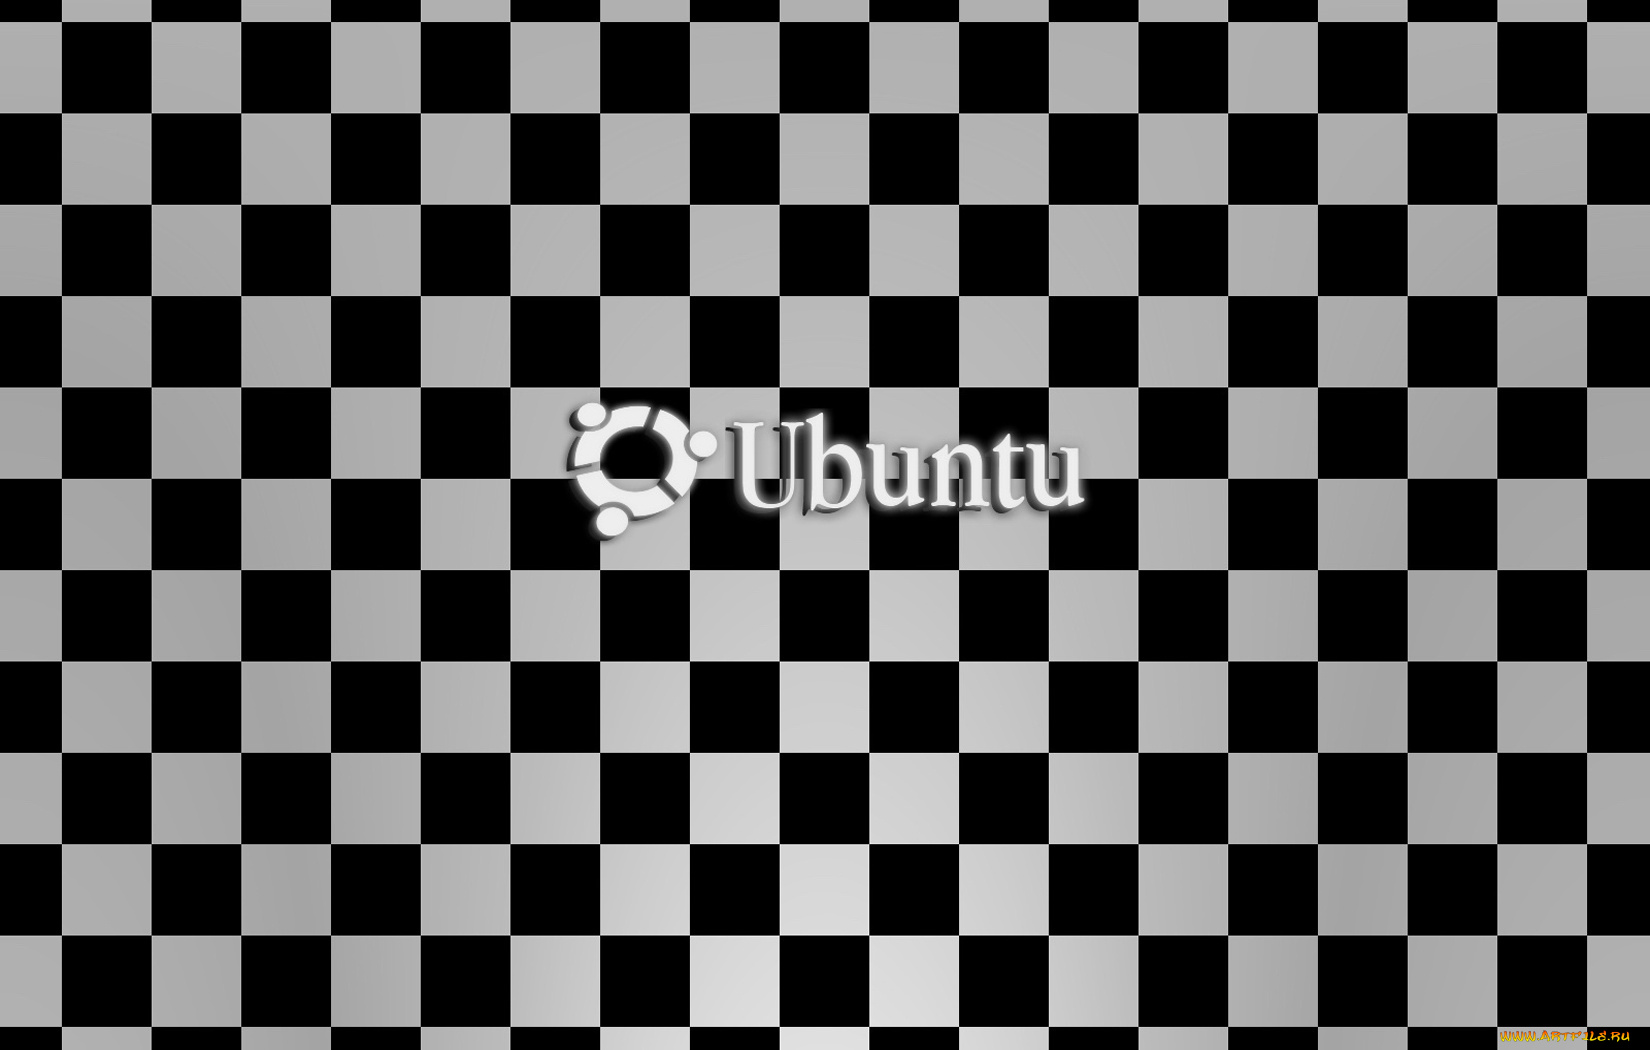 компьютеры, ubuntu, linux